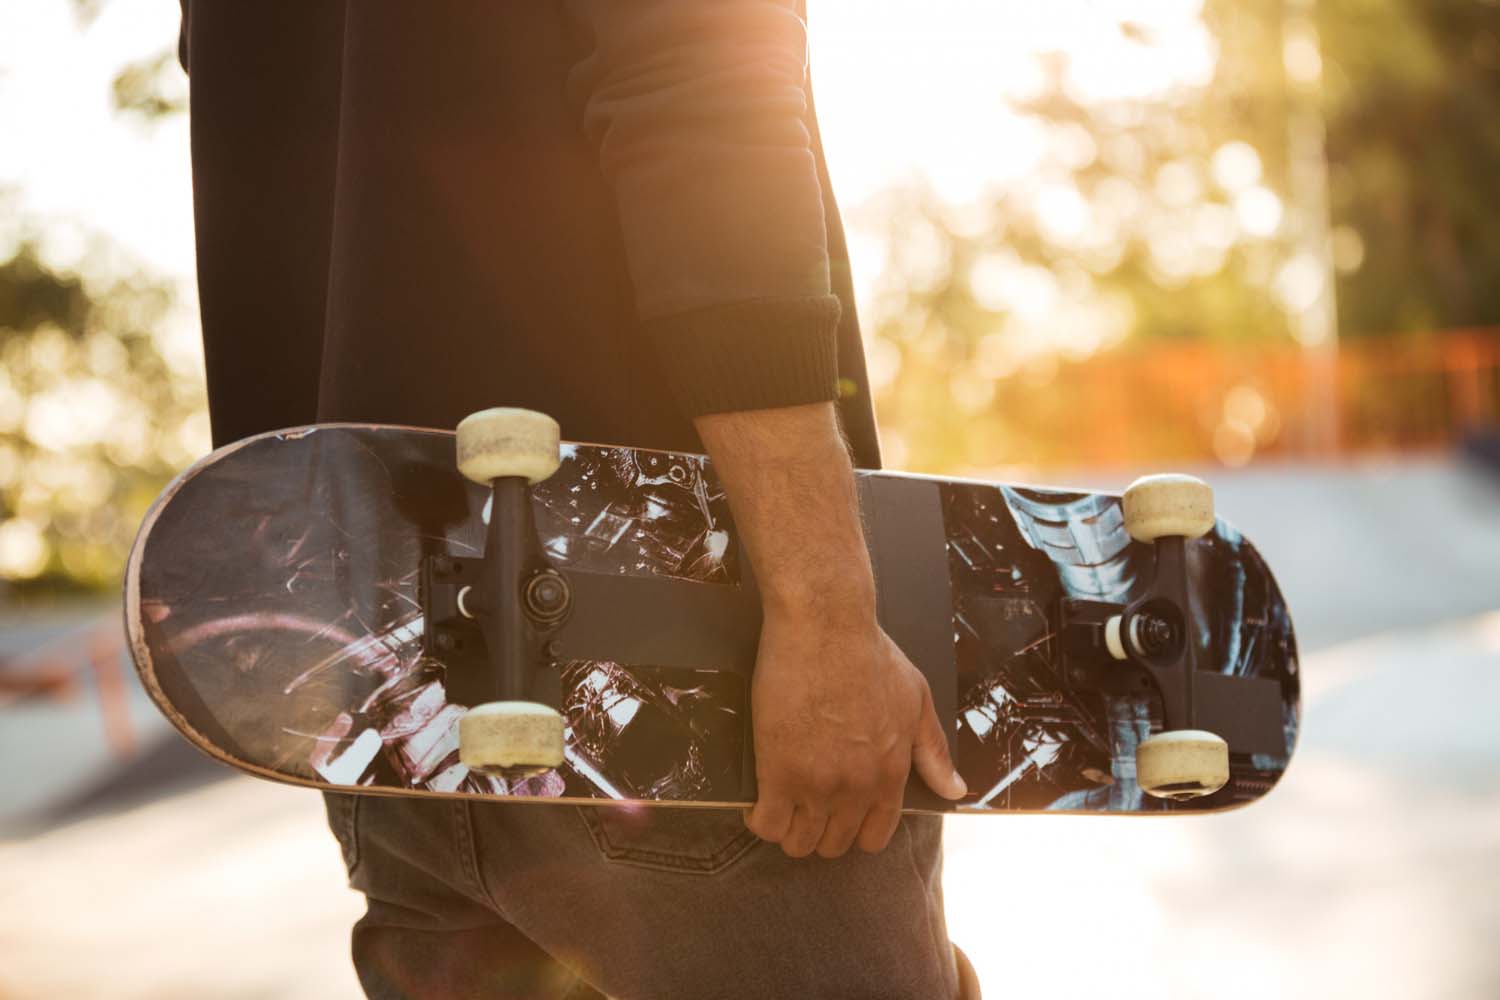 É iniciante no skateboard e ainda está buscando dicas que te ajudem a evoluir no esporte? Então leia aqui 10 coisas que você precisa saber